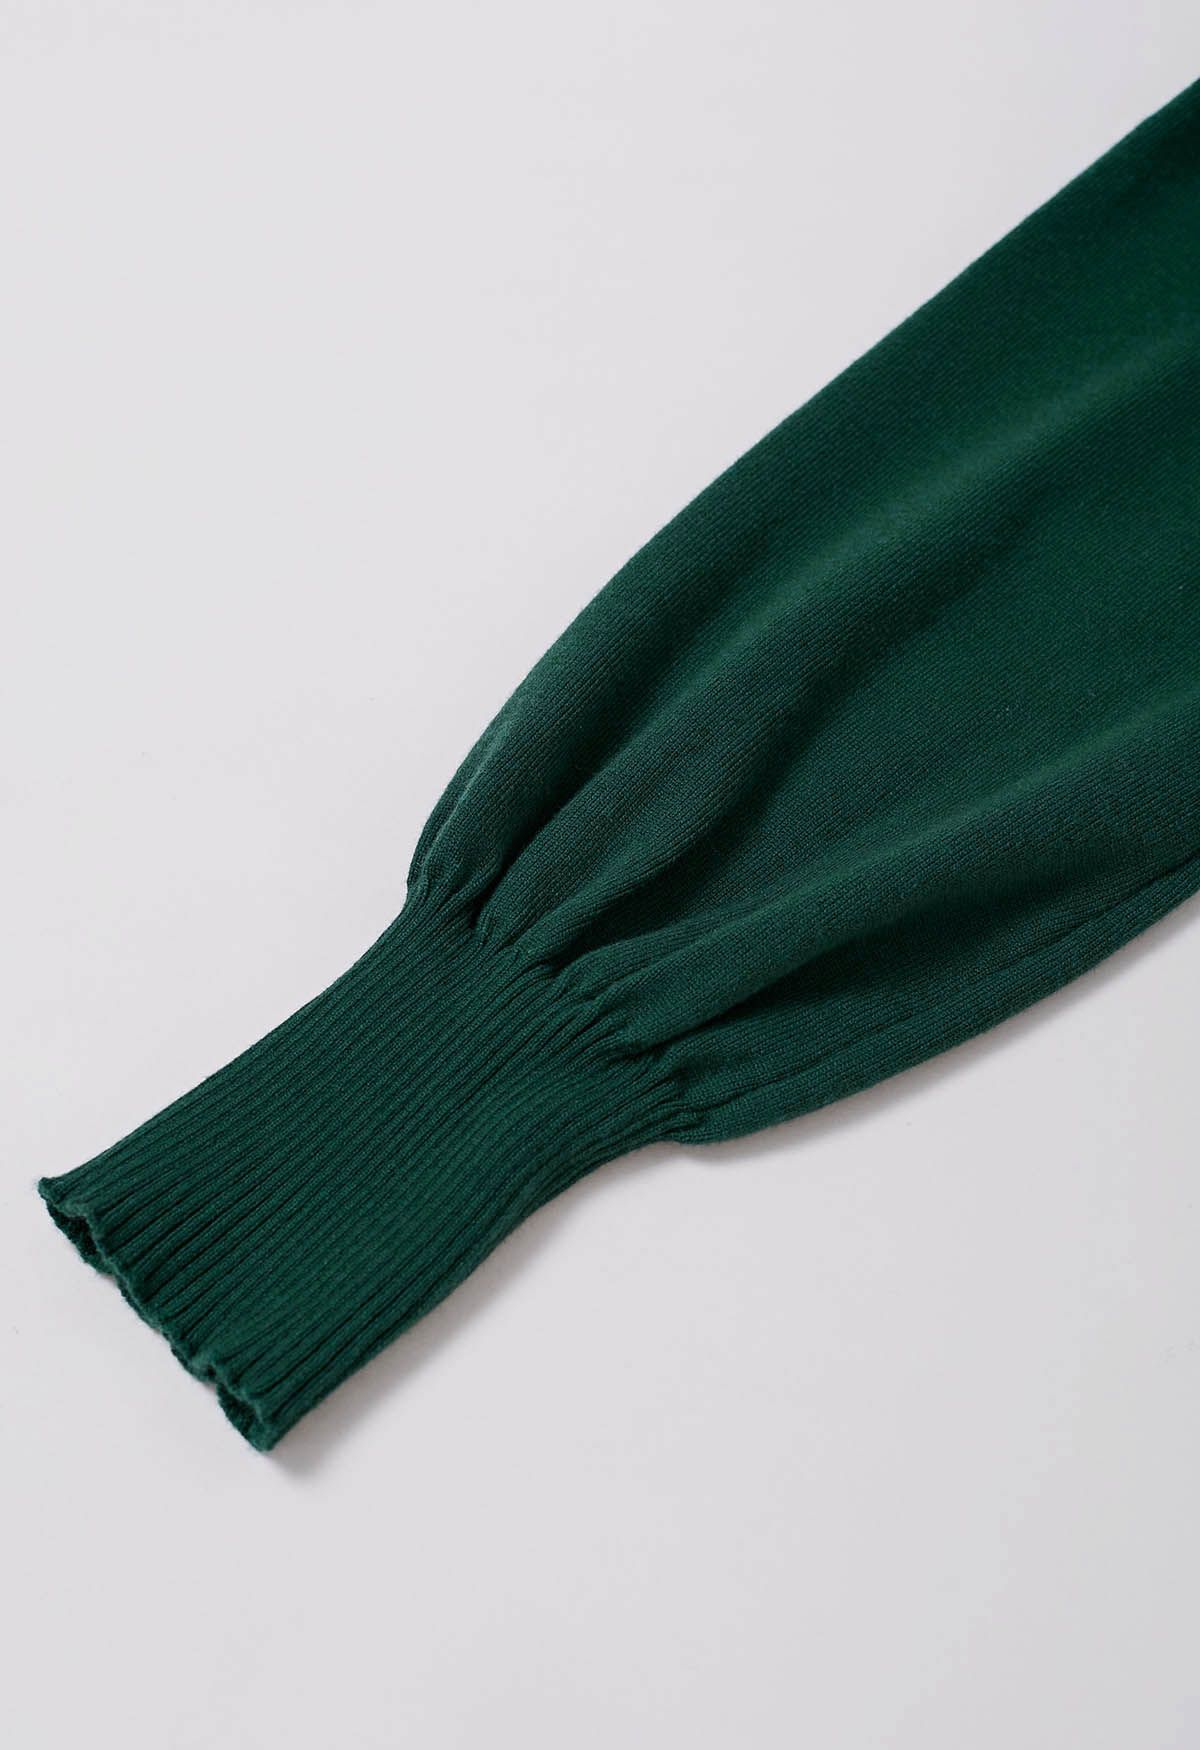 فستان آسر بربطة عنق على شكل حرف V وخصر متماسك باللون الأخضر الداكن